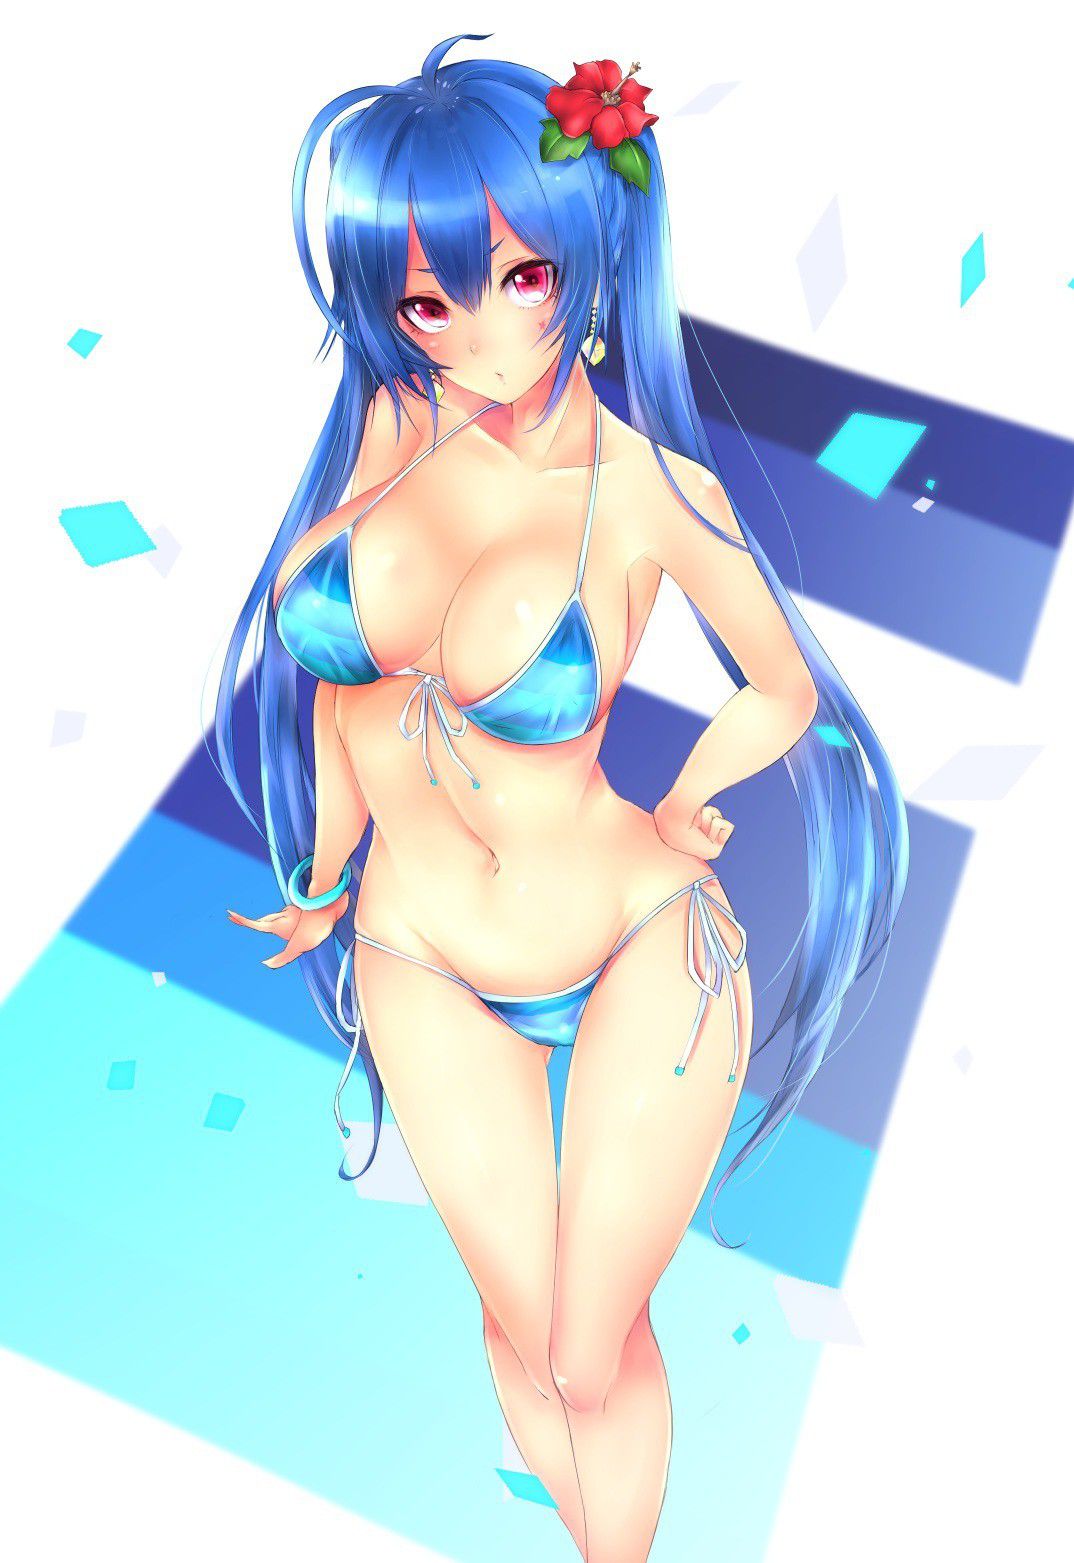 Porori Chikuni! Secondary erotic picture of a girl in a micro bikini wwww part3 21